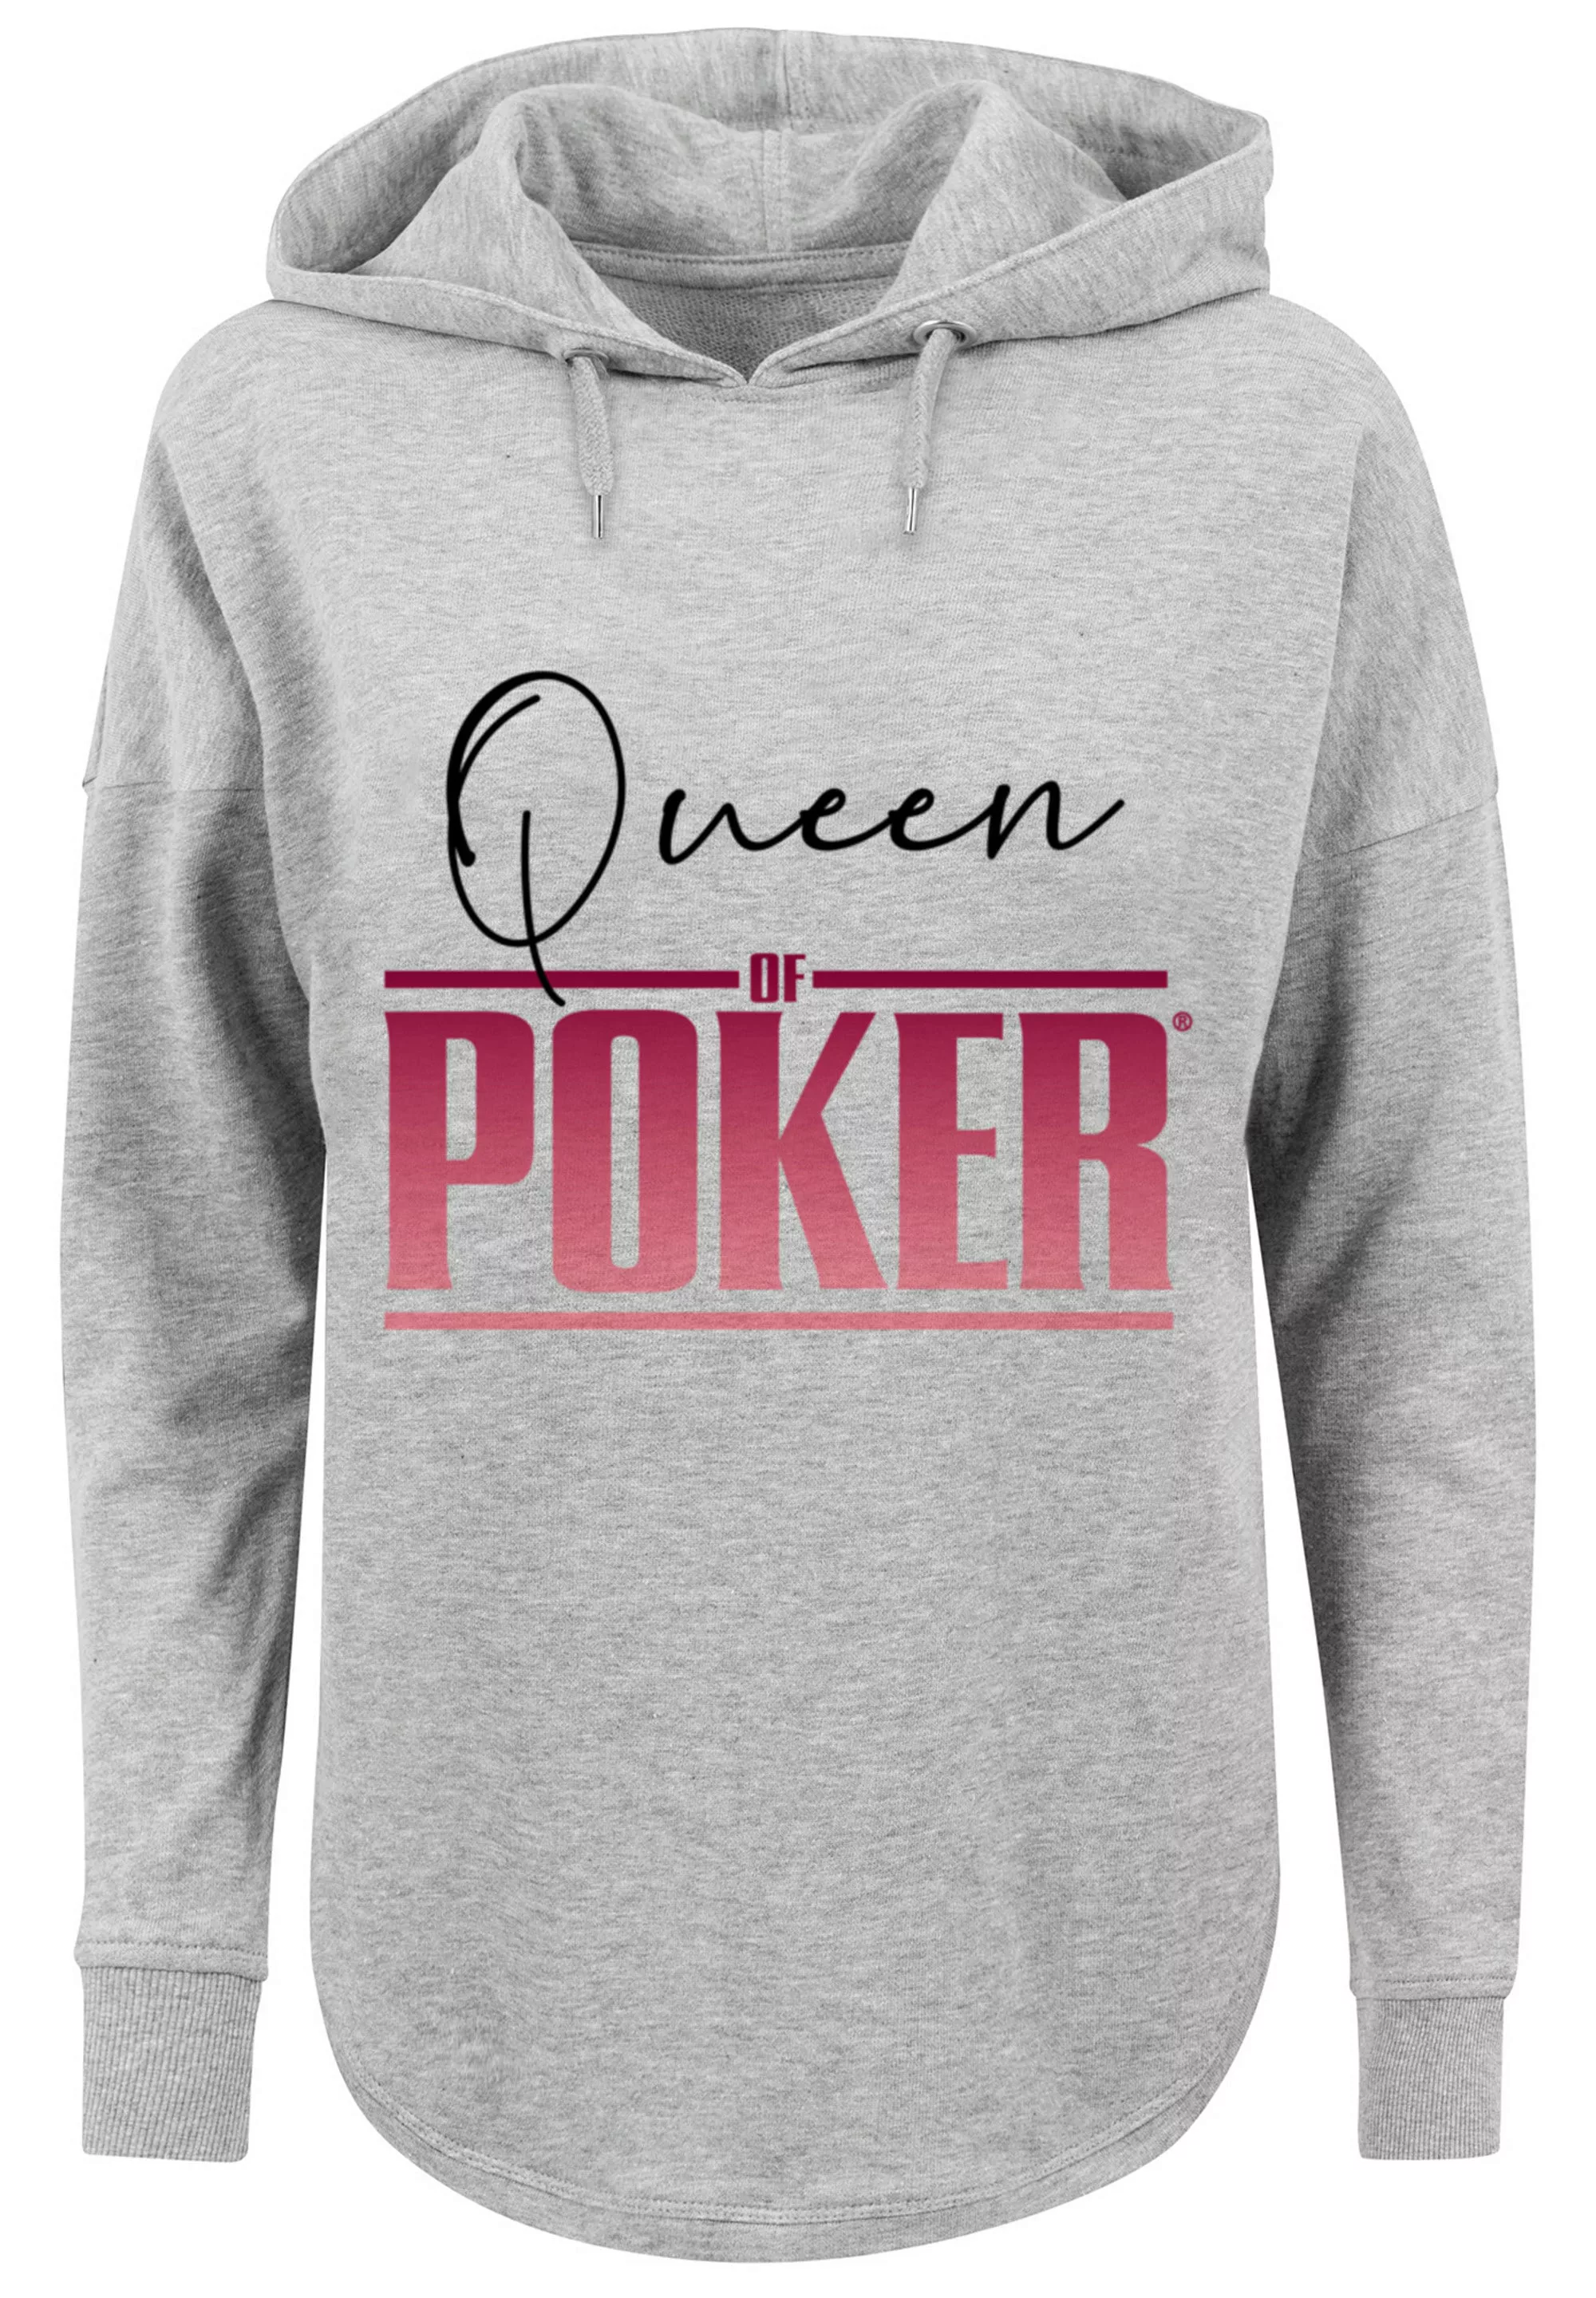 F4NT4STIC Kapuzenpullover "Queen of Poker", Print günstig online kaufen